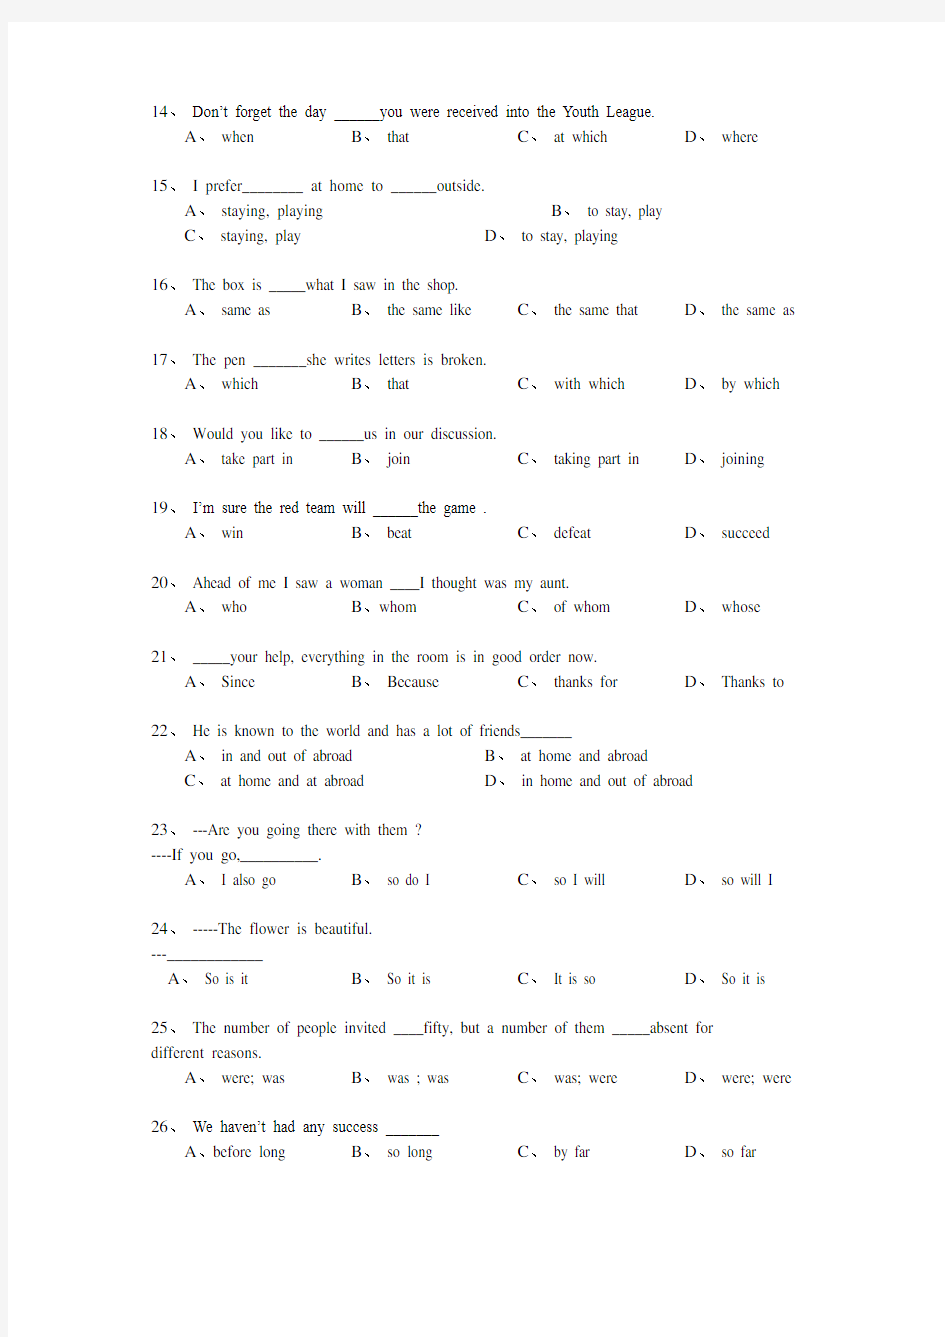 中考英语精选单选题易错题100题 